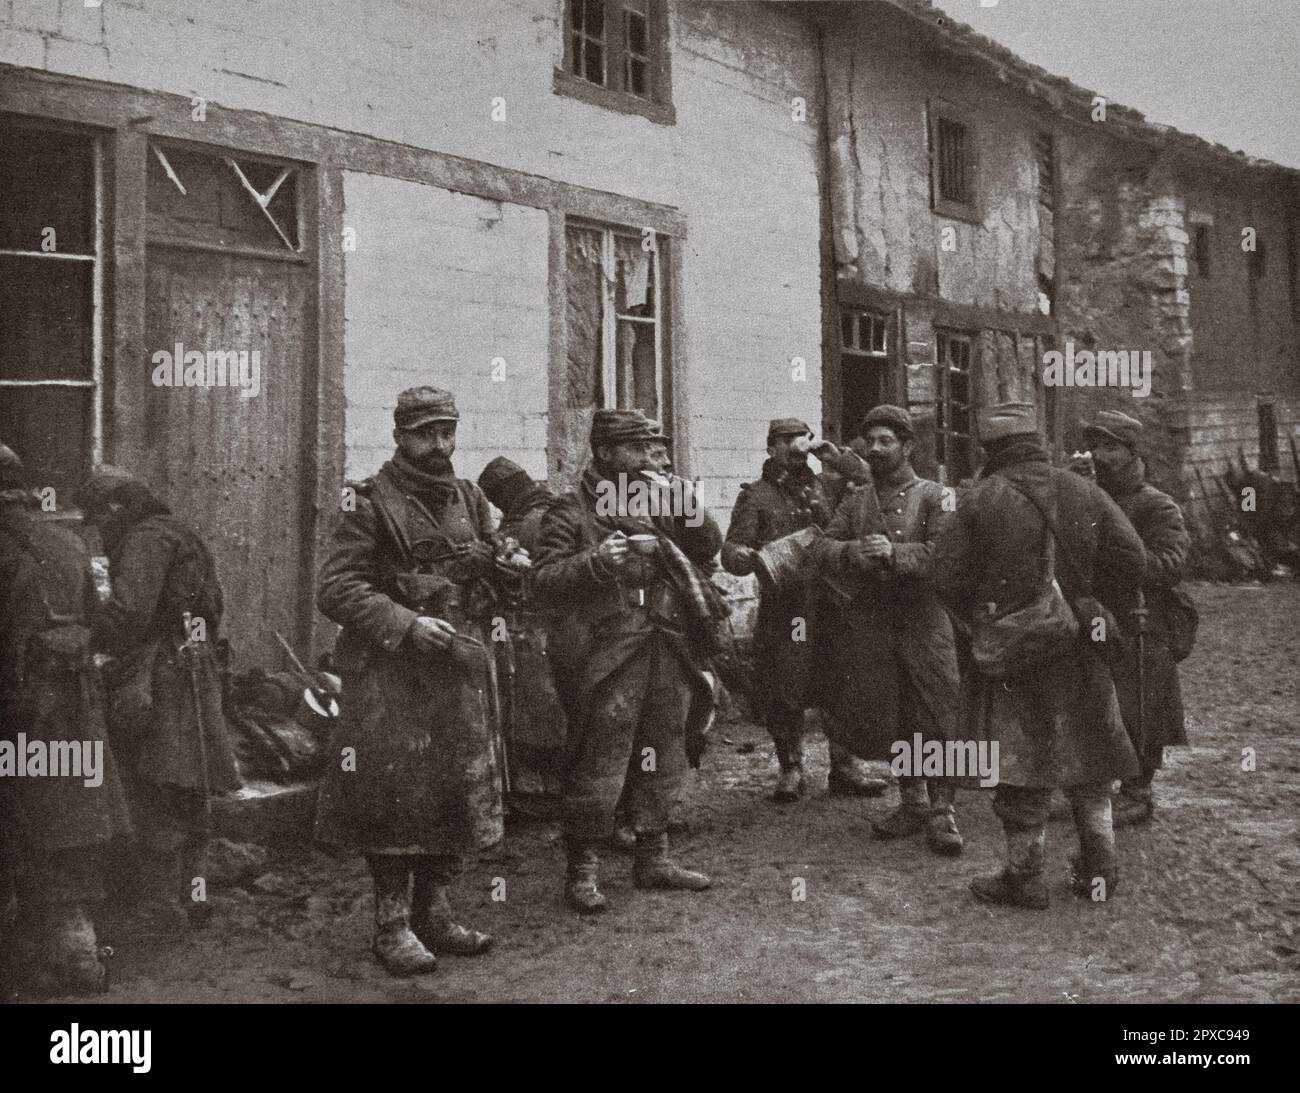 Prima guerra mondiale La Francia in guerra. Una strada a Souain, 21 dicembre 1914, alle 8:1/2 del mattino: 10 uomini hanno caffè prima di andare a combattere; in un'ora, saranno al fuoco. Foto Stock